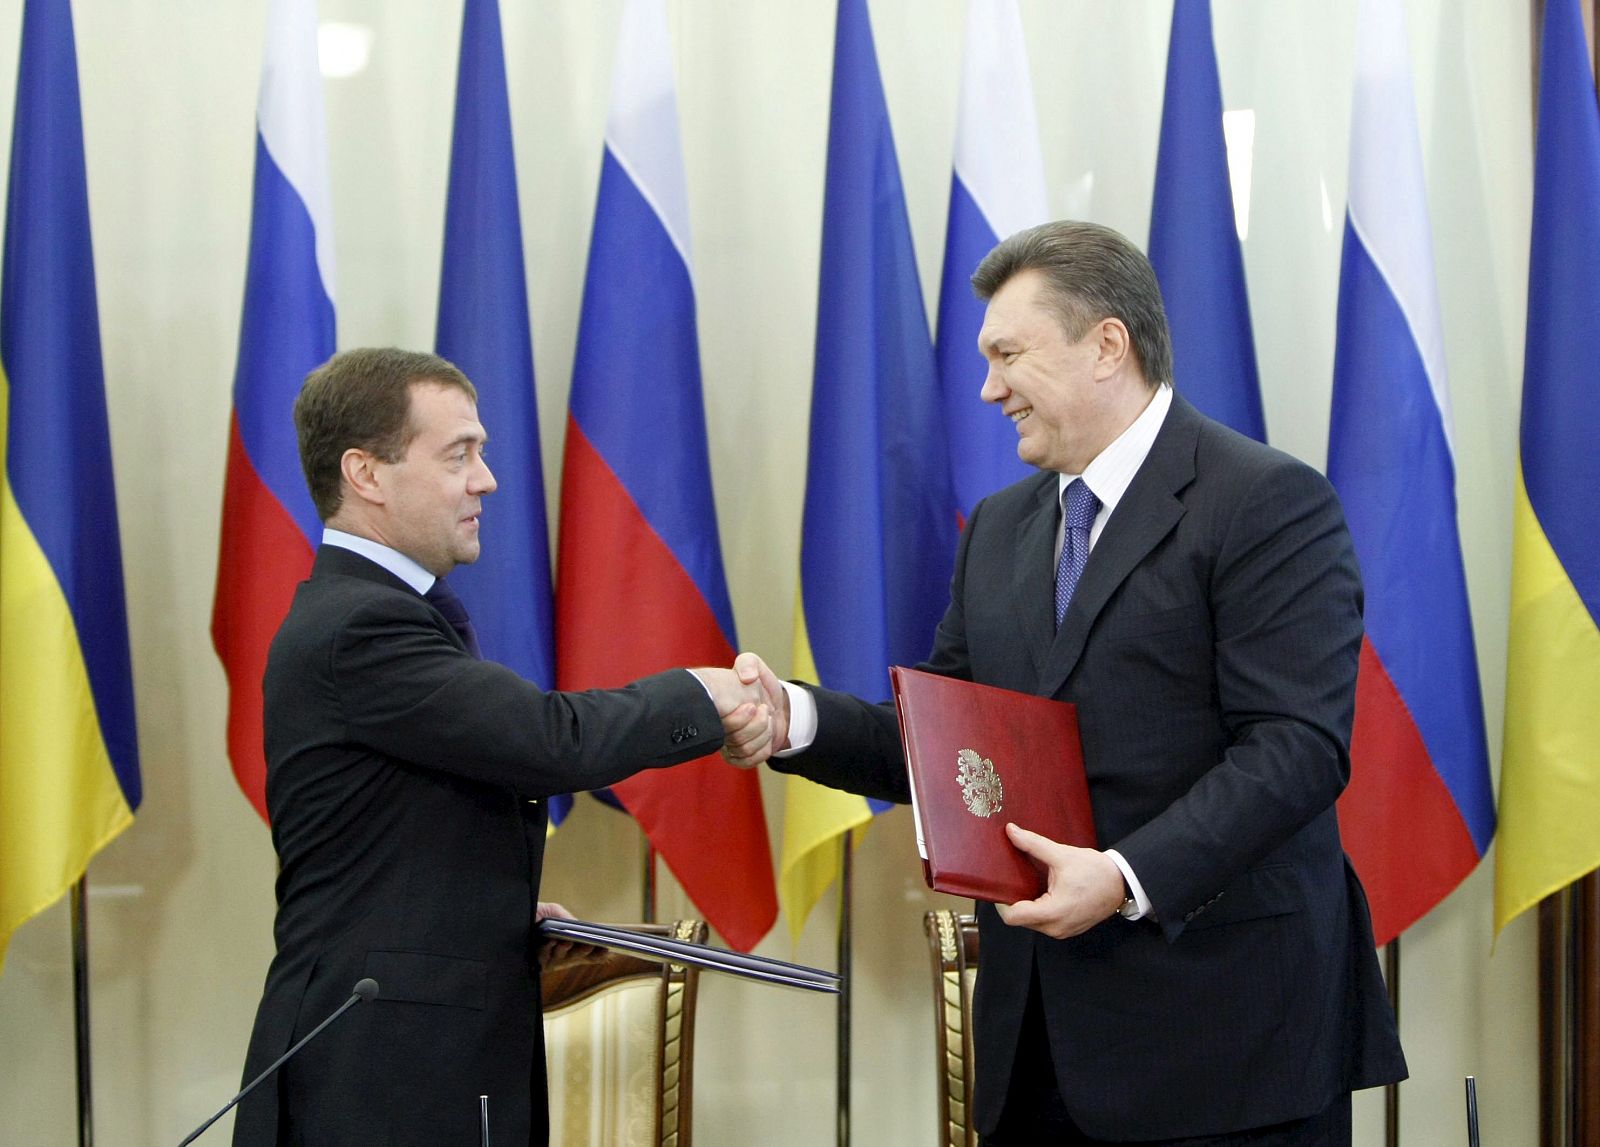 El presidente ruso Dmitry Medvédev y su homólogo ucraniano Viktor Yanukovych se estrechan la mano tras la firma de un acuerdo estratégico en Kharkov, Ucrania.